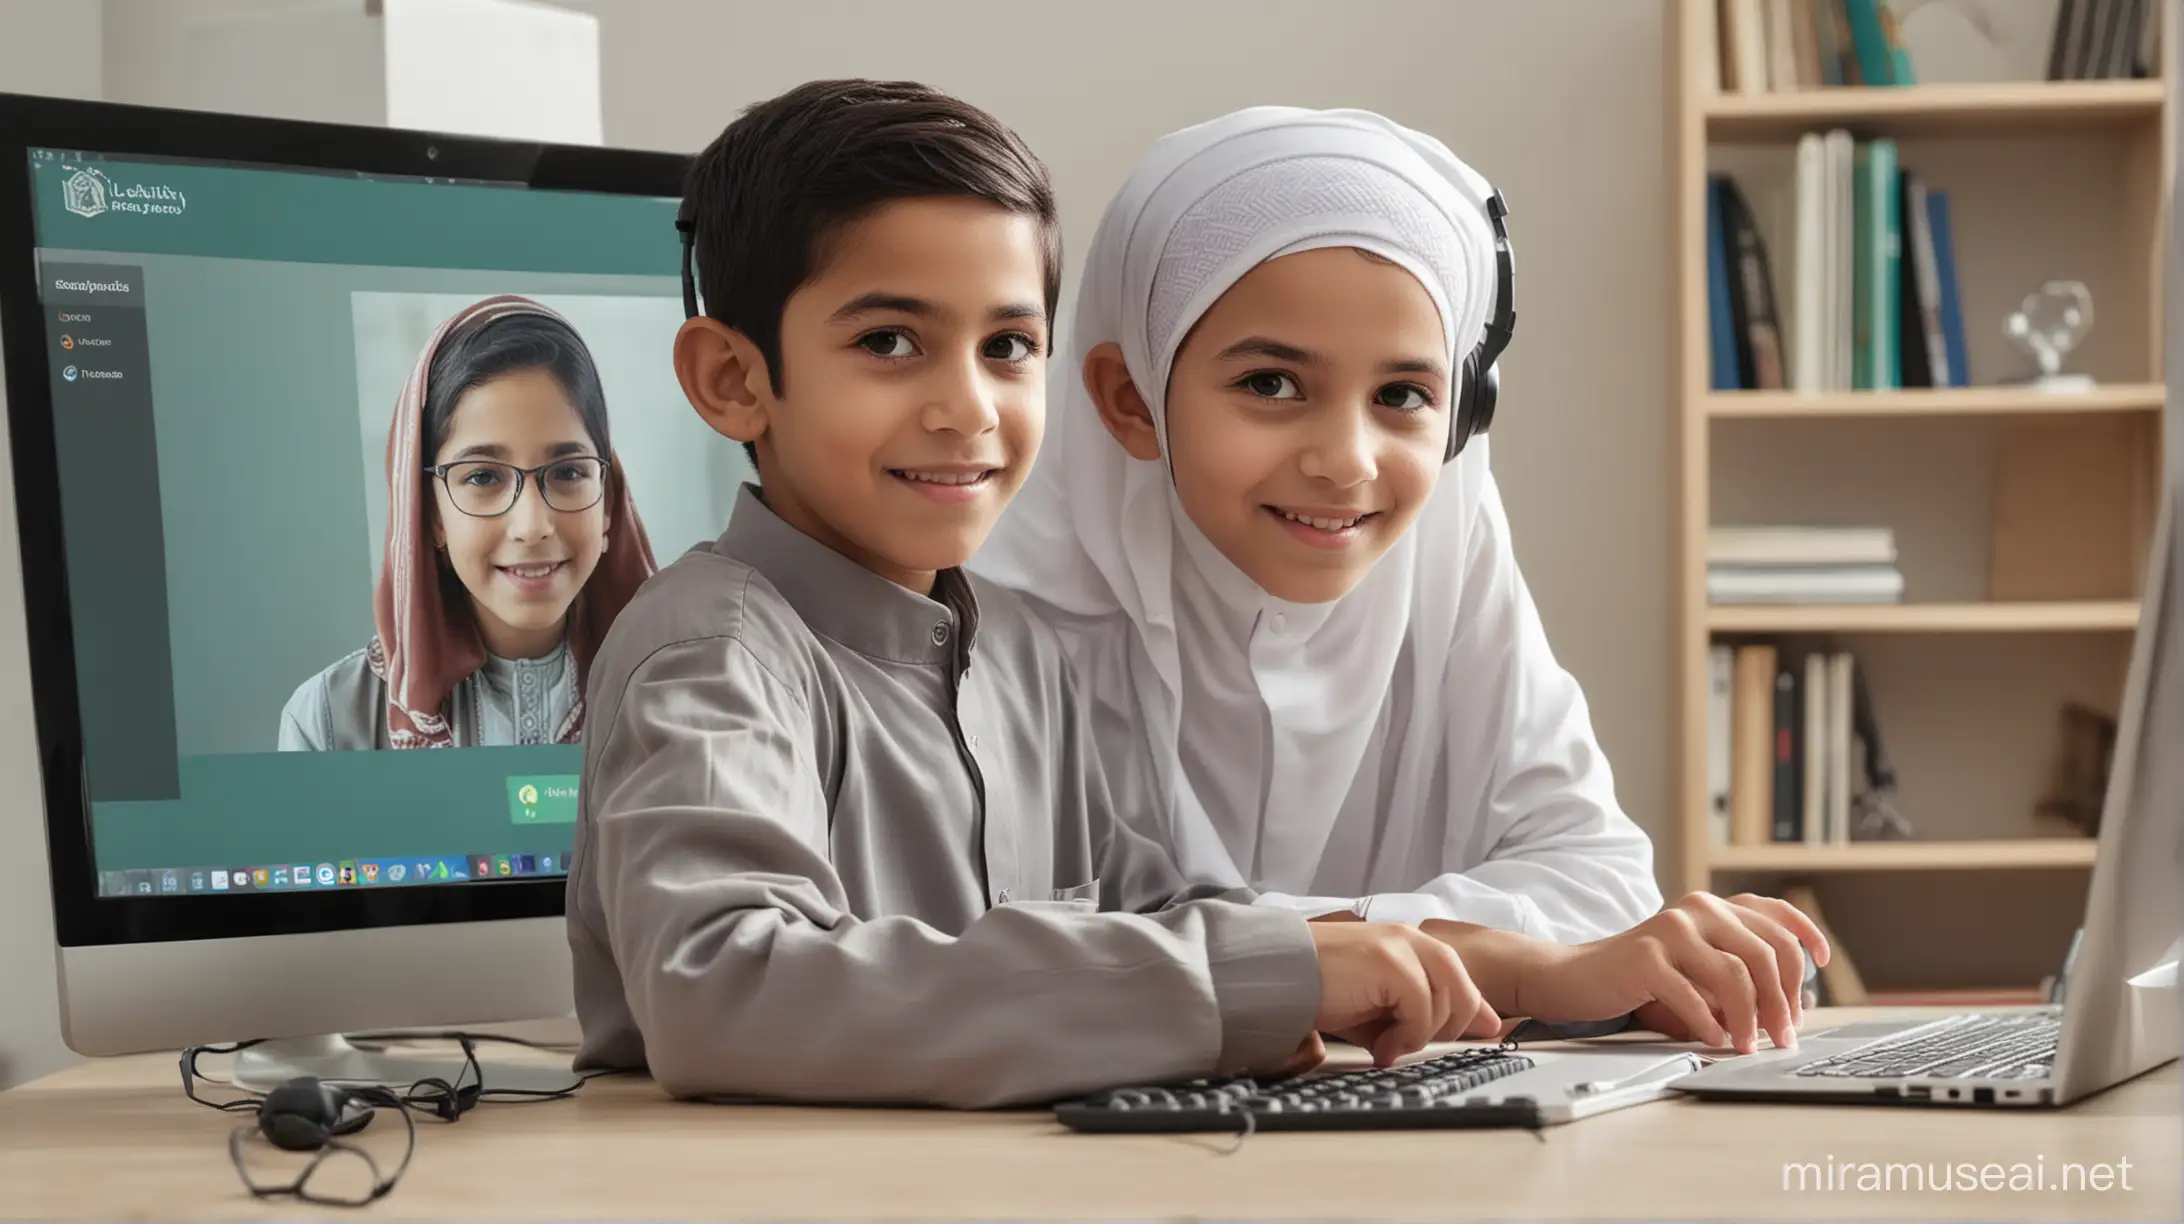 muslim boy listening a online class
Muslim teacher on computer screen 